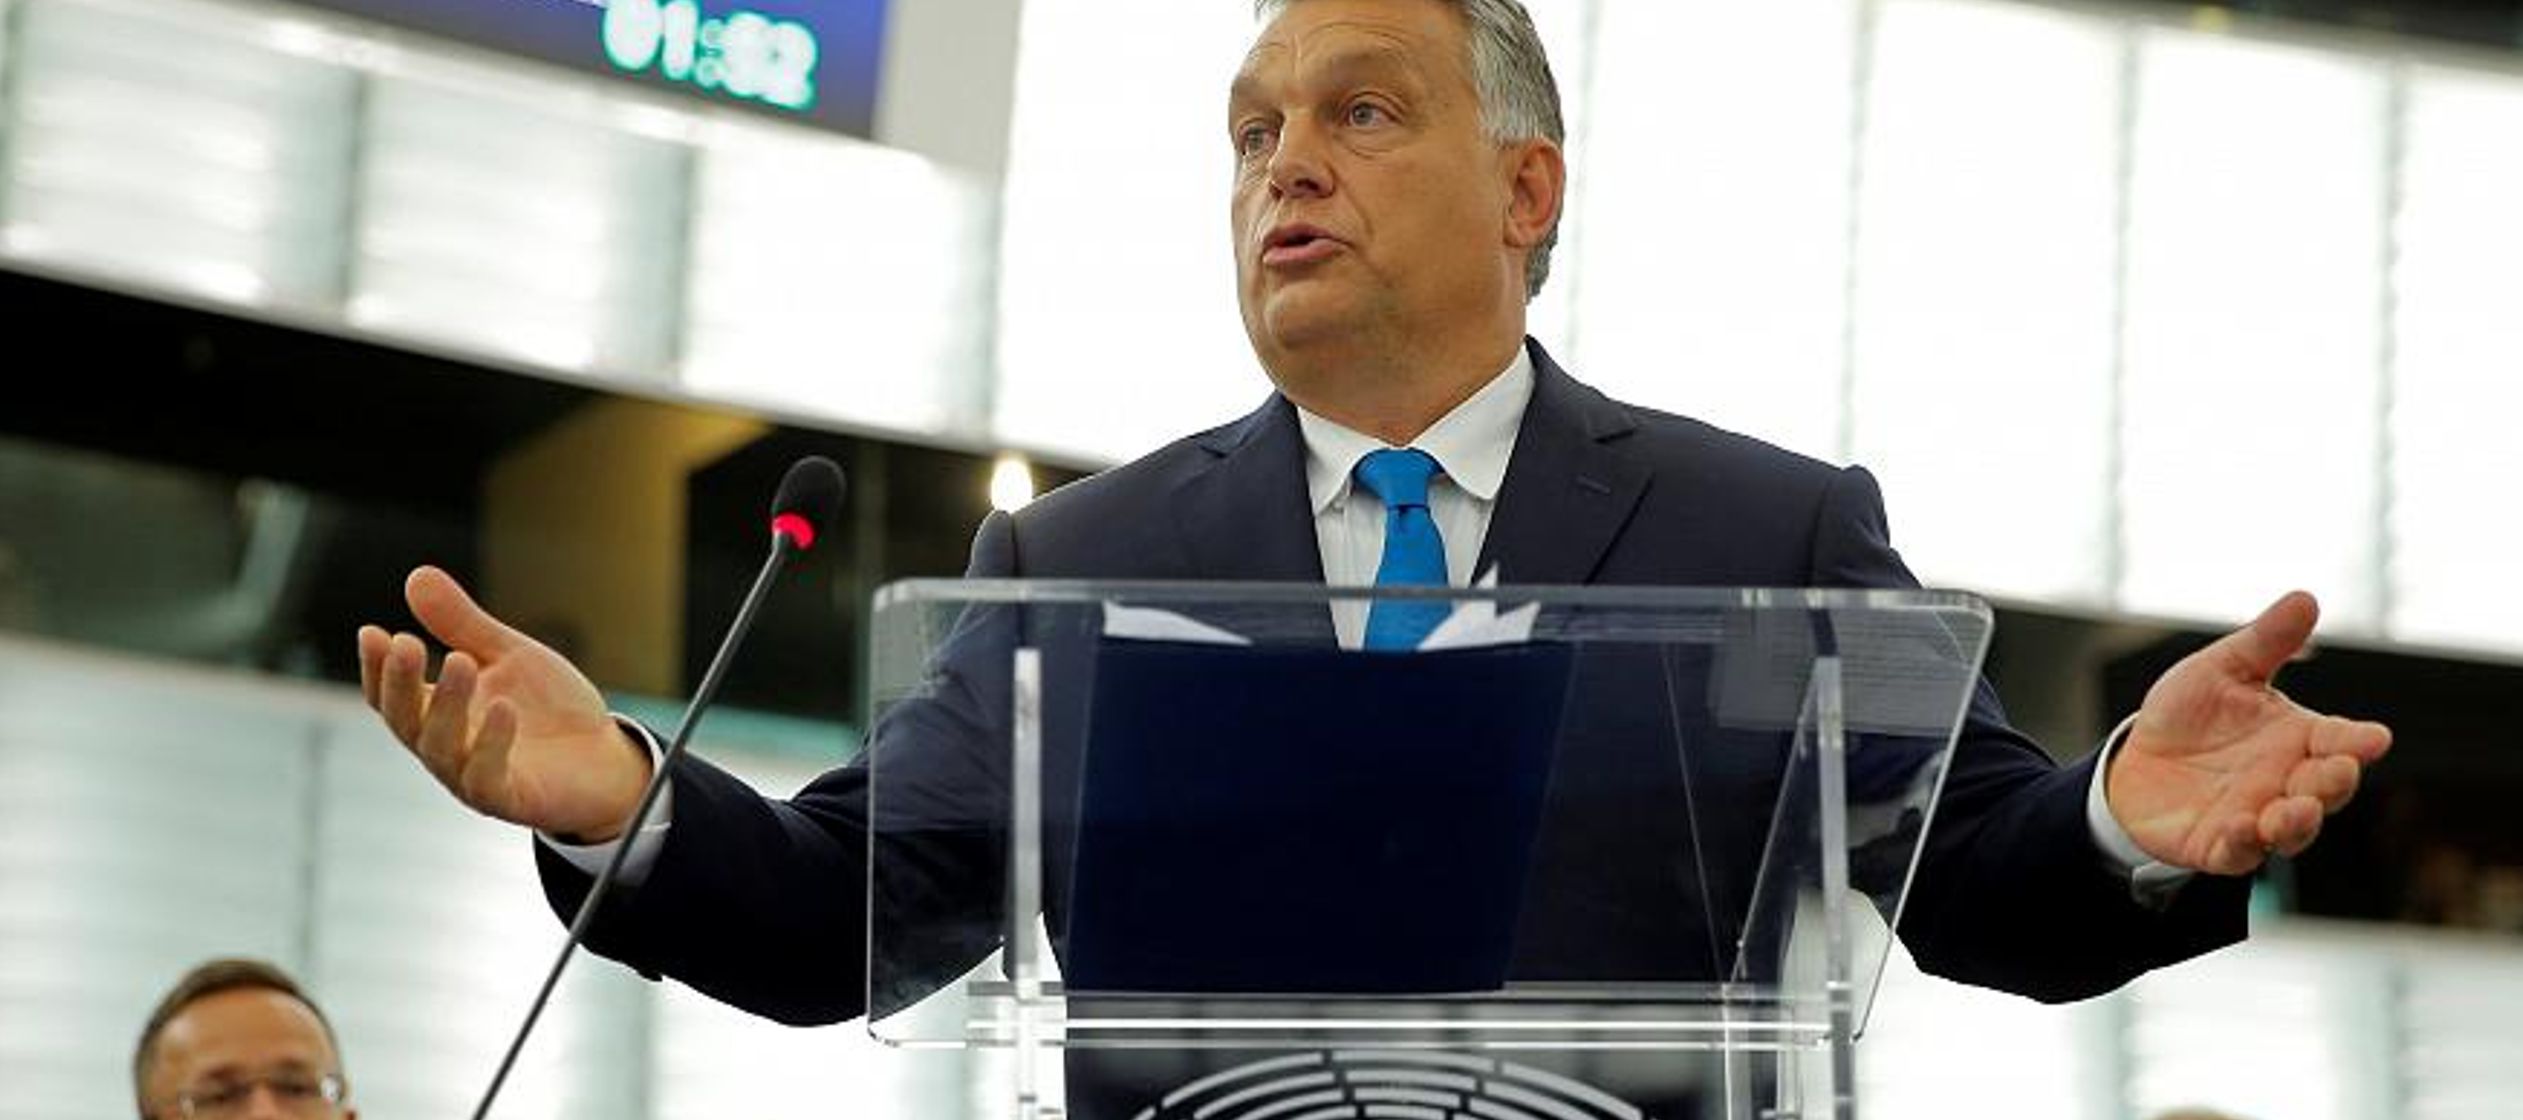 Hungría dijo que buscaría maneras legales de desafiar la votación 448 a 197,...